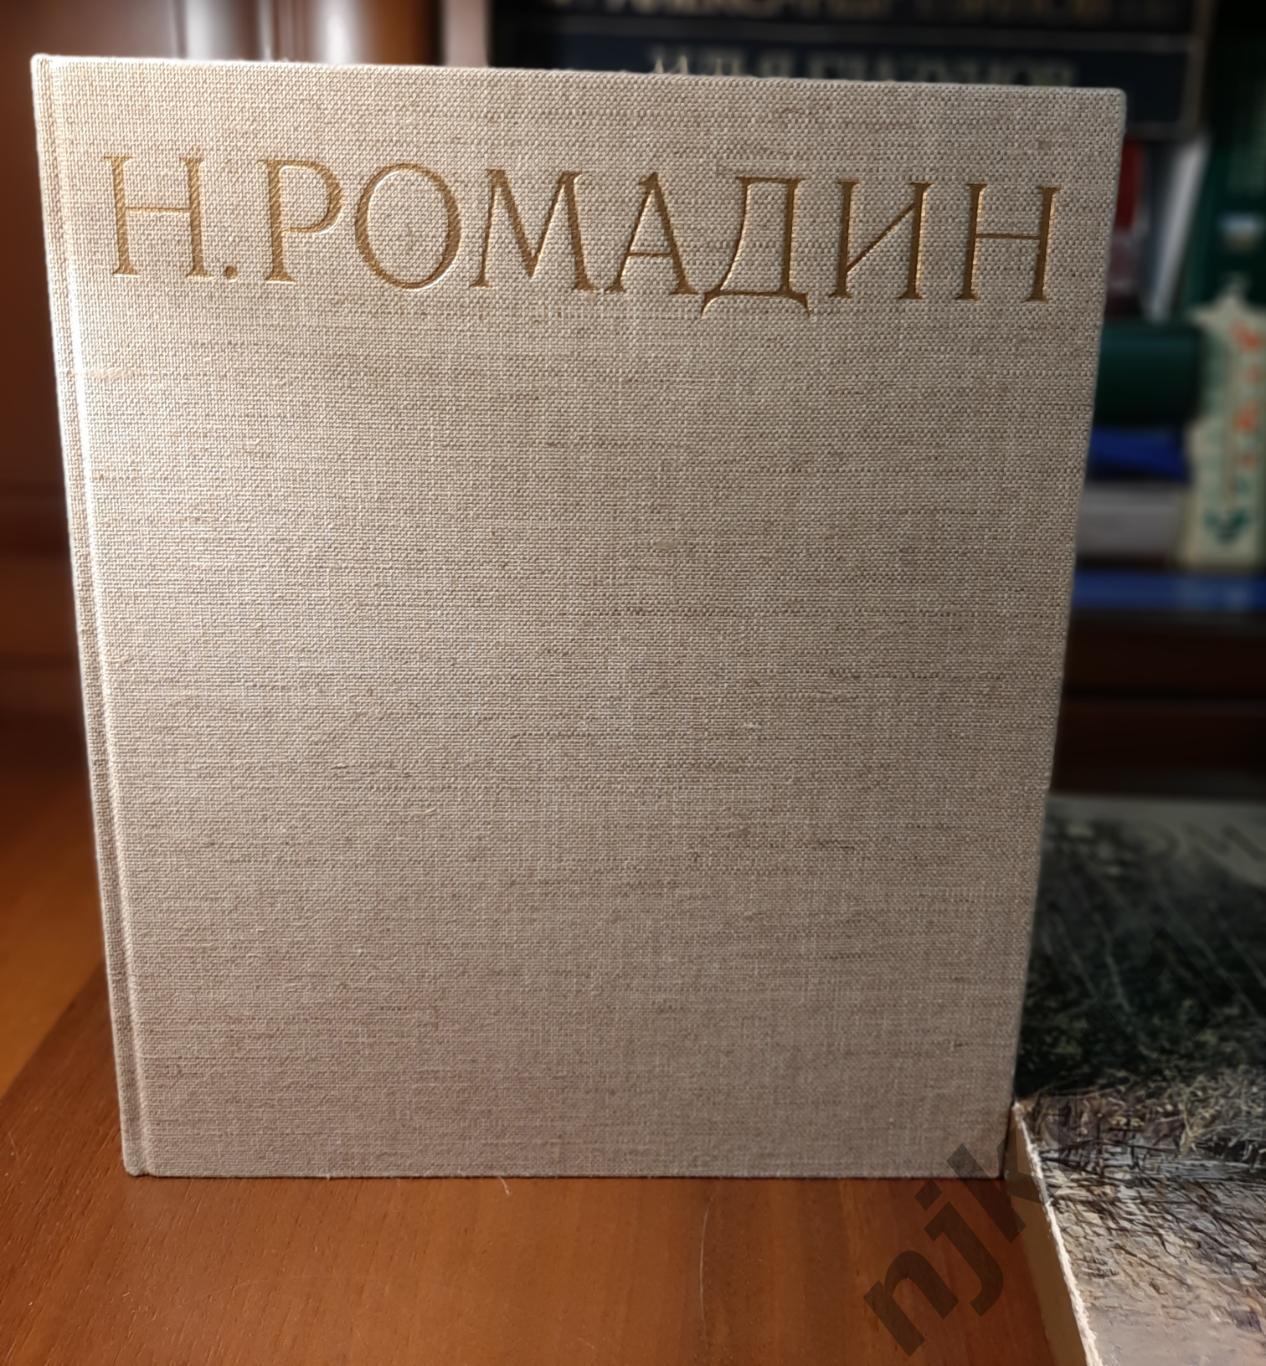 Ромадина, Н.Г. Николай Ромадин 1981г. Альбом 3